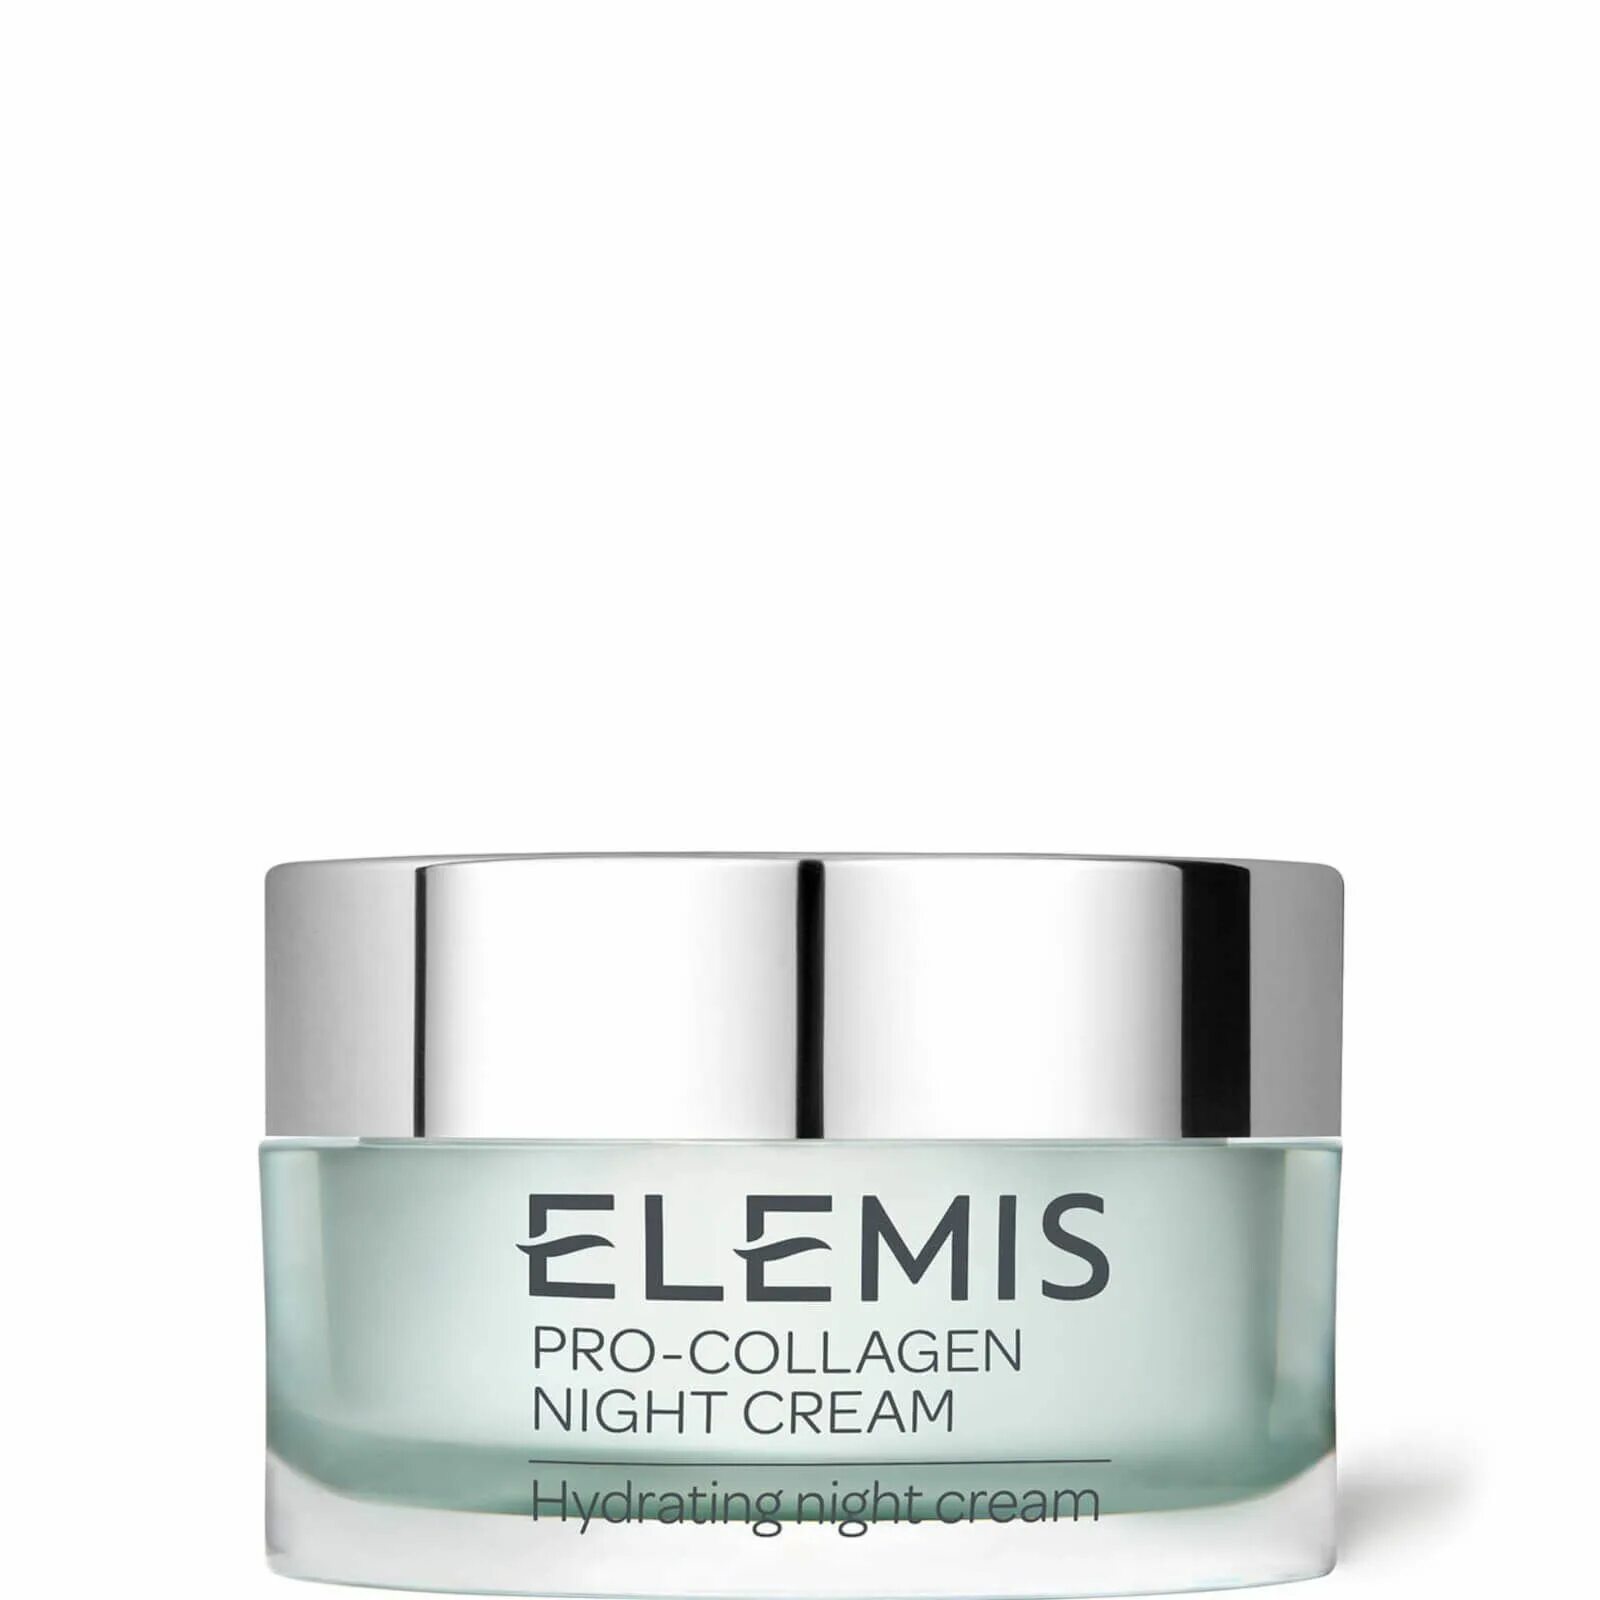 Elemis Pro-Collagen Marine Cream 30 мл. Крем Elemis Pro-Collagen Cleansing Balm. Elemis Pro-Collagen Oxygenating Night Cream. Elemis бальзам для умывания. Крем marine collagen